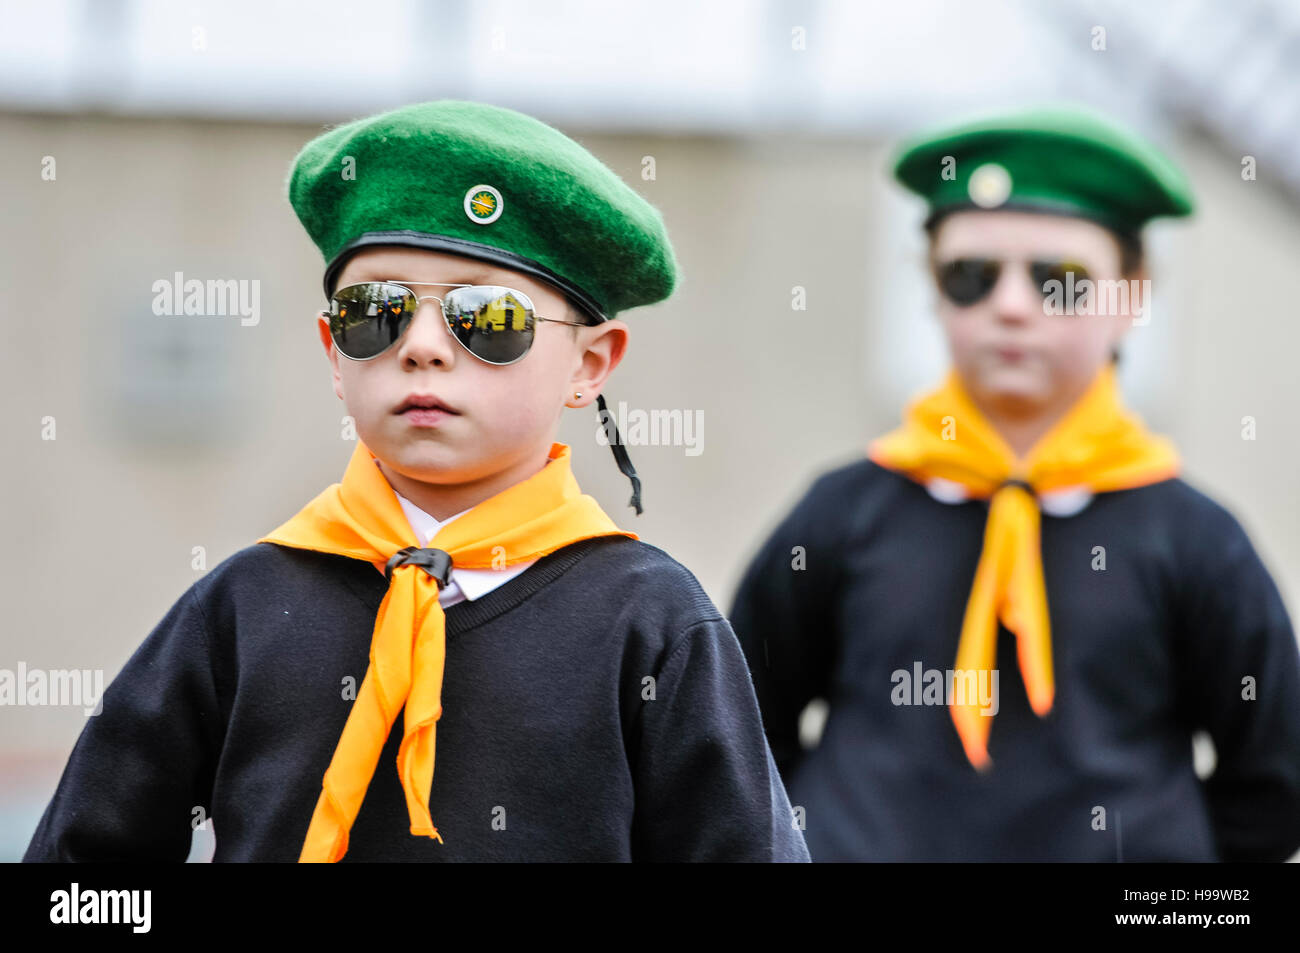 Belfast, Irlanda del 13 Nov 2016 - Niños disfrazados de pseudo-uniformes paramilitares incluidos boinas verdes, cuello bufandas, camisetas blancas, puentes y llevar gafas sol reflejados participar en un